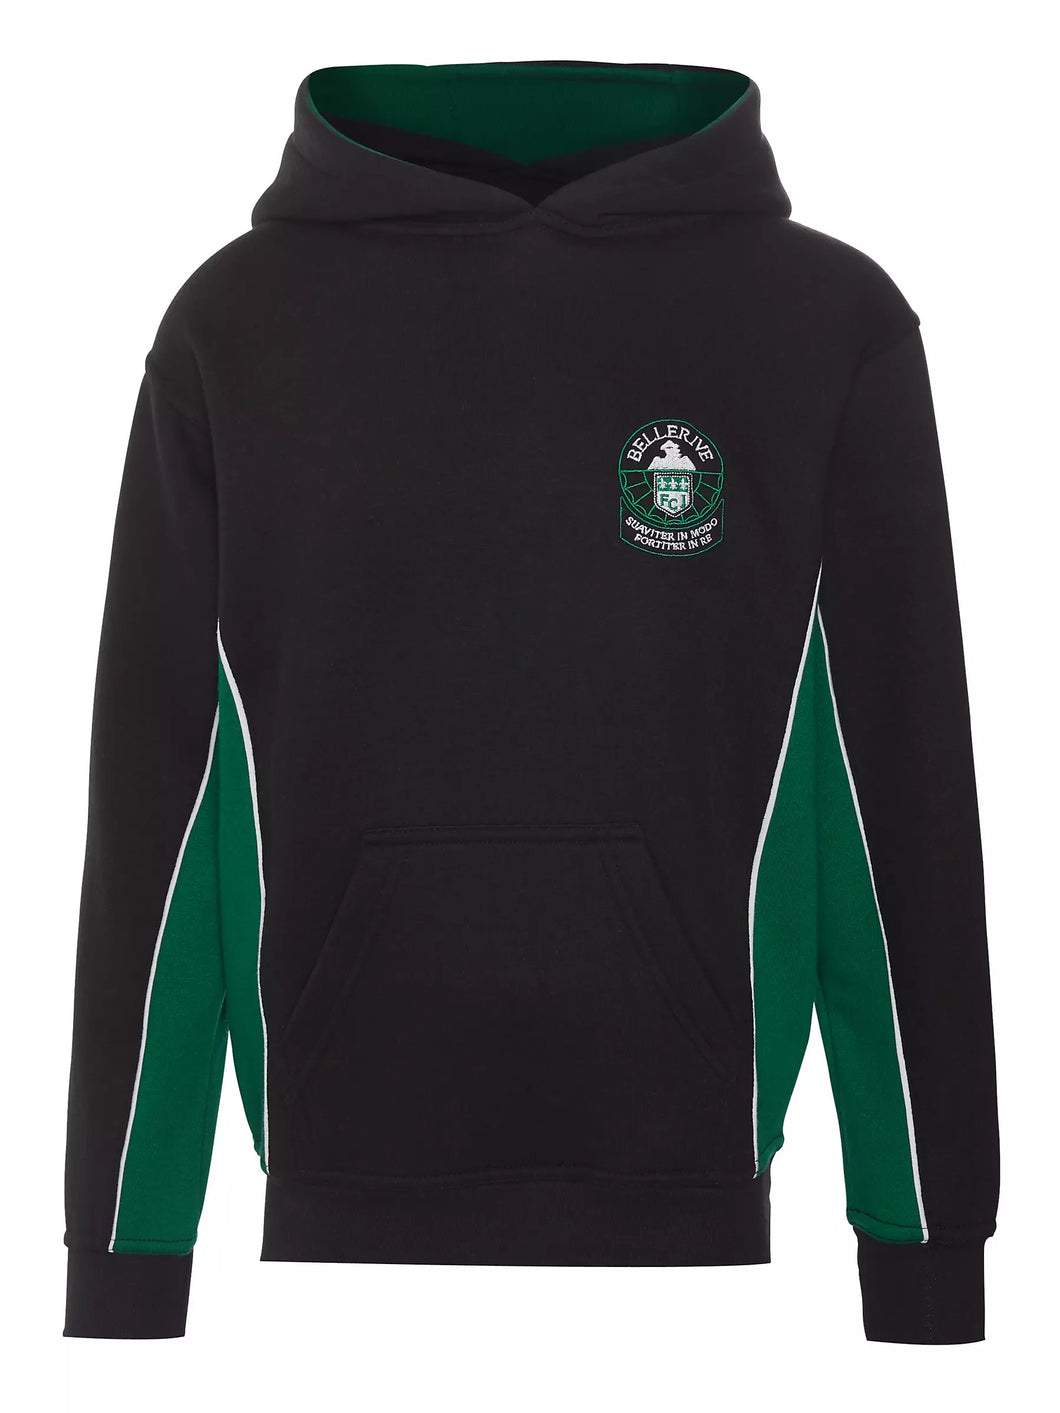 Bellerive Black & Green Hooded Sweatshirt (pre-loved)